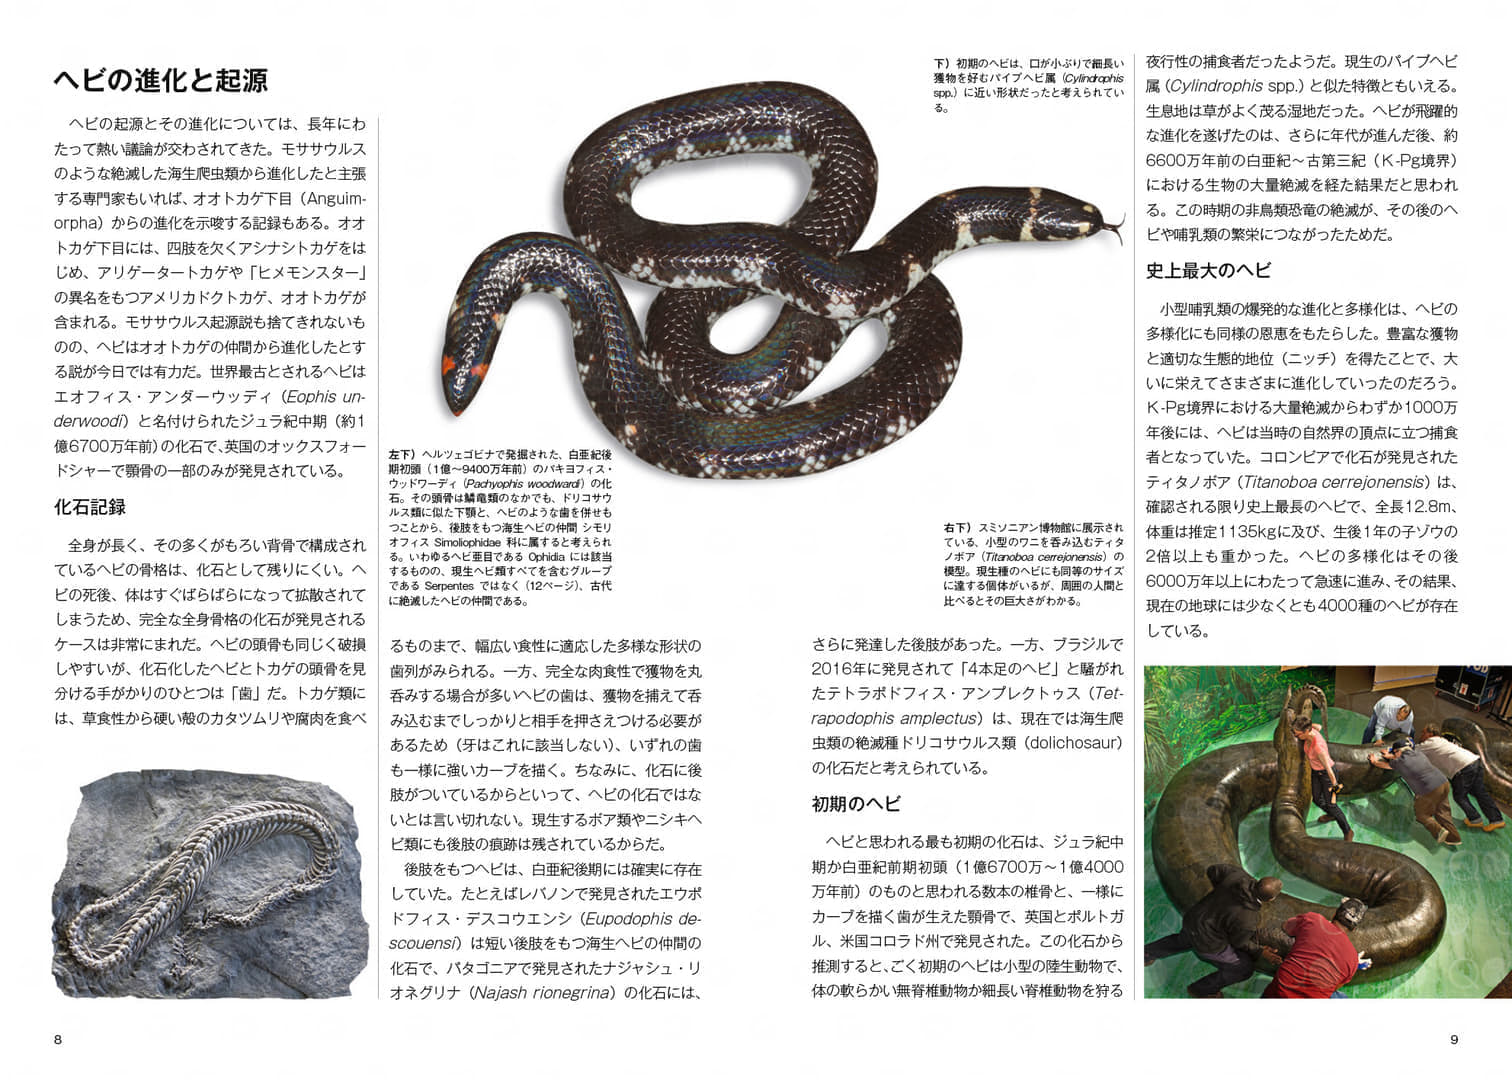 「ヘビ大全 SNAKES OF THE WORLD」が発売。世界に約4000種といわれるヘビを徹底解説した書籍_001